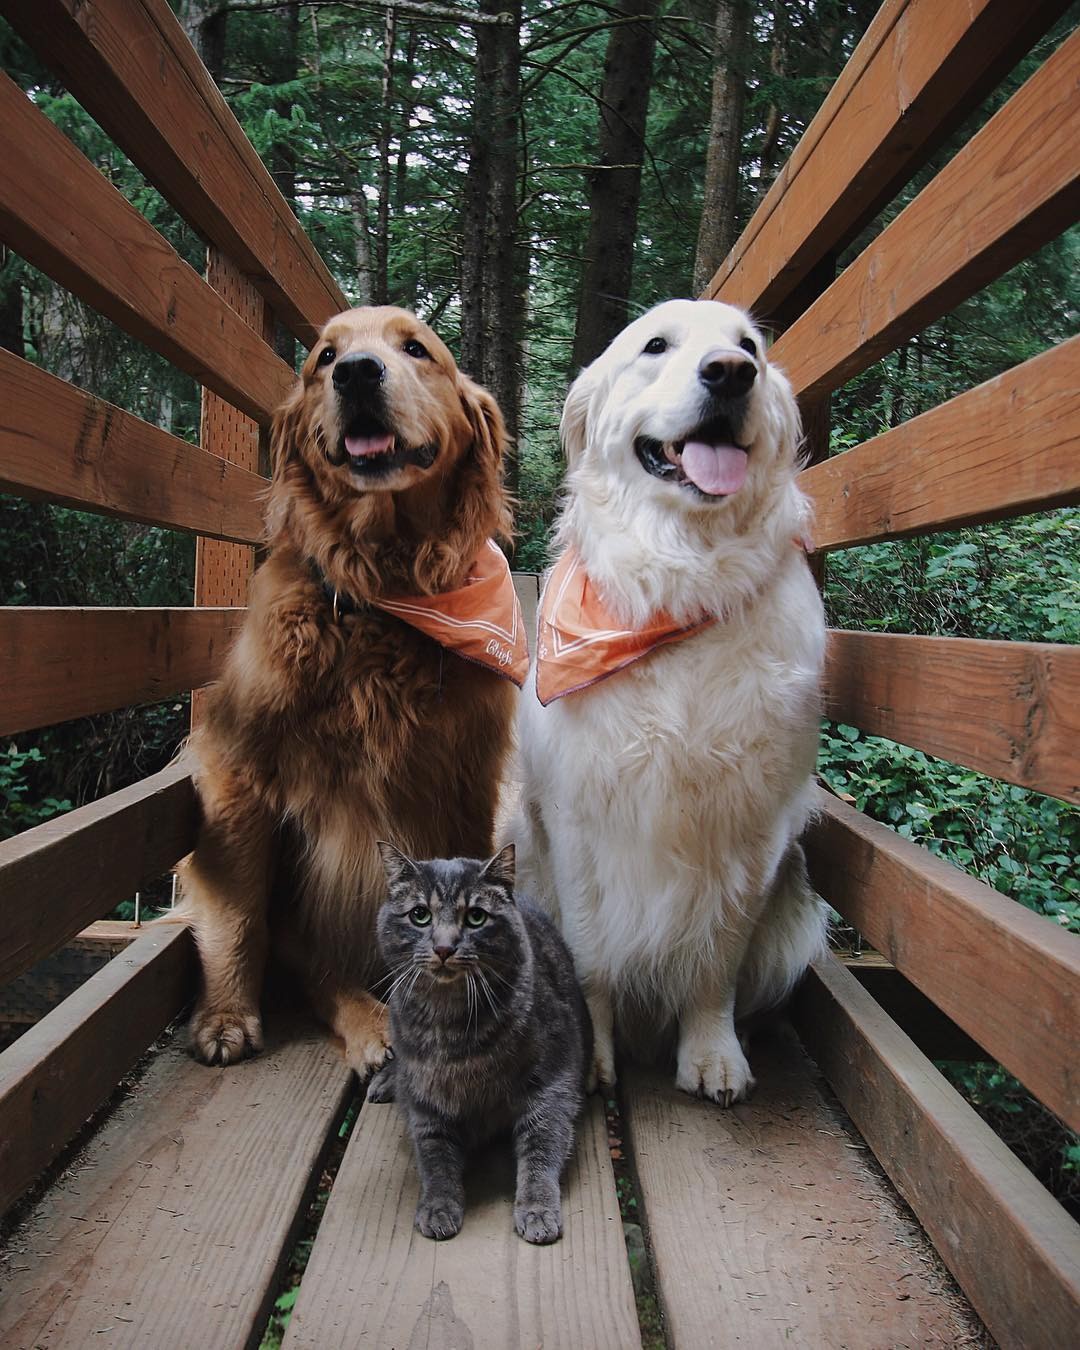 Loài chó luôn là người bạn đáng tin cậy của mọi con người. Với bức hình về chú chó bạn thân, bạn sẽ cảm nhận được tình bạn và lòng trung thành mà chúng đem lại. Hãy xem và chia sẻ bức hình này với những người bạn của bạn để cùng nhau trải nghiệm tình bạn đích thực.